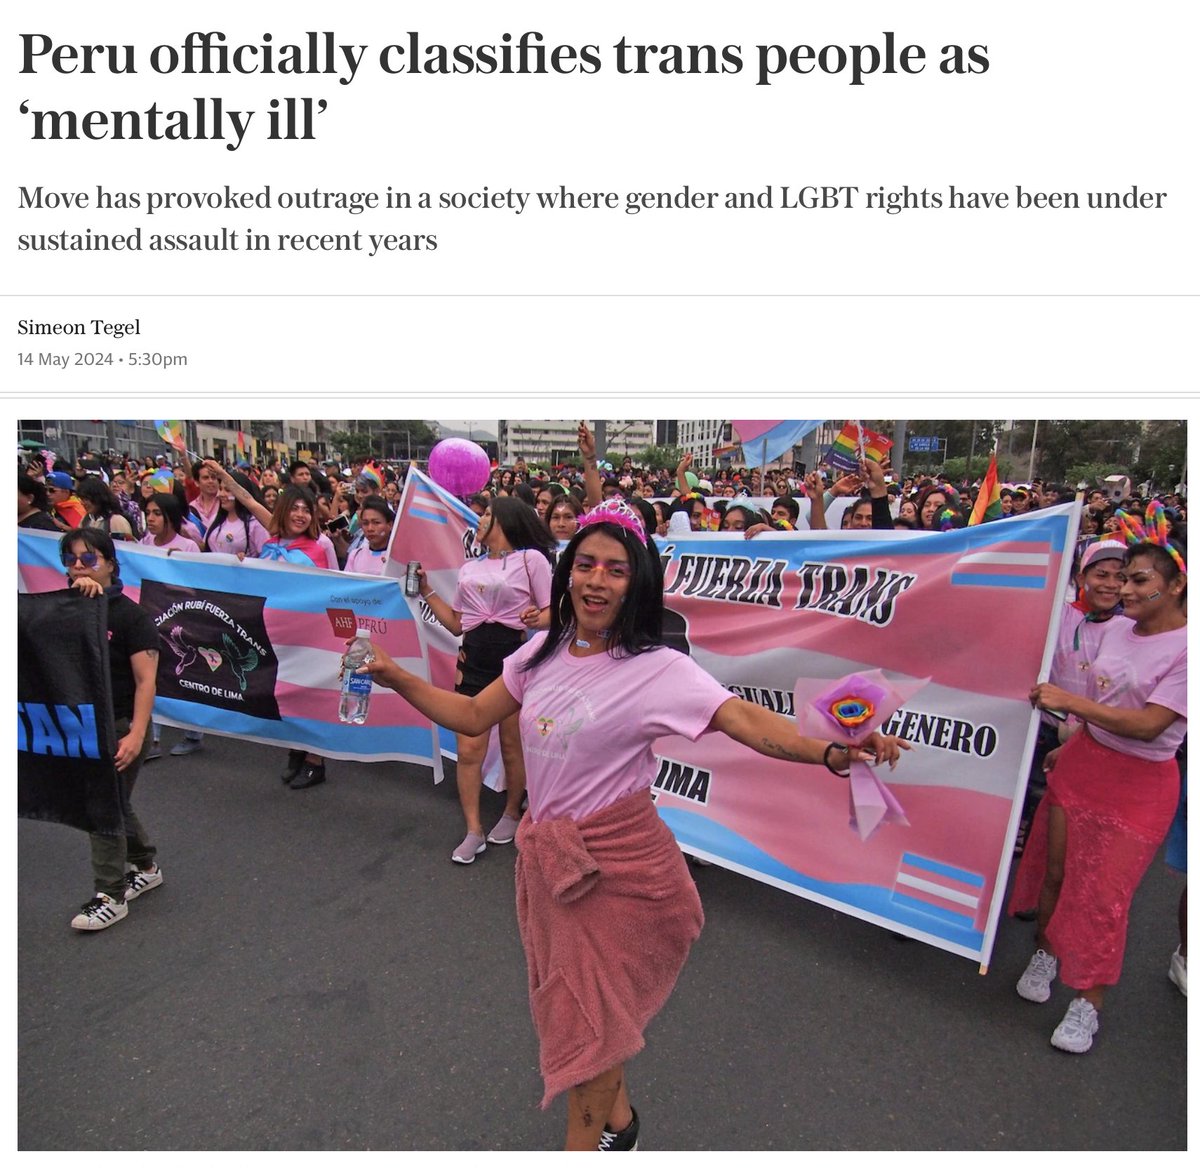 Die Regierung Peru|s hat offiziell 'Trans' und 'intersexuelle' Menschen als psychisch krank deklariert.

Das ist natürlich wirklich lustig, denn Fanatikern à la Svenja Schulze, deren Motto Am-Regenbogen-soll-die-Welt-genesen heißt, wird es geradezu zweiteilen, wenn sie sich…